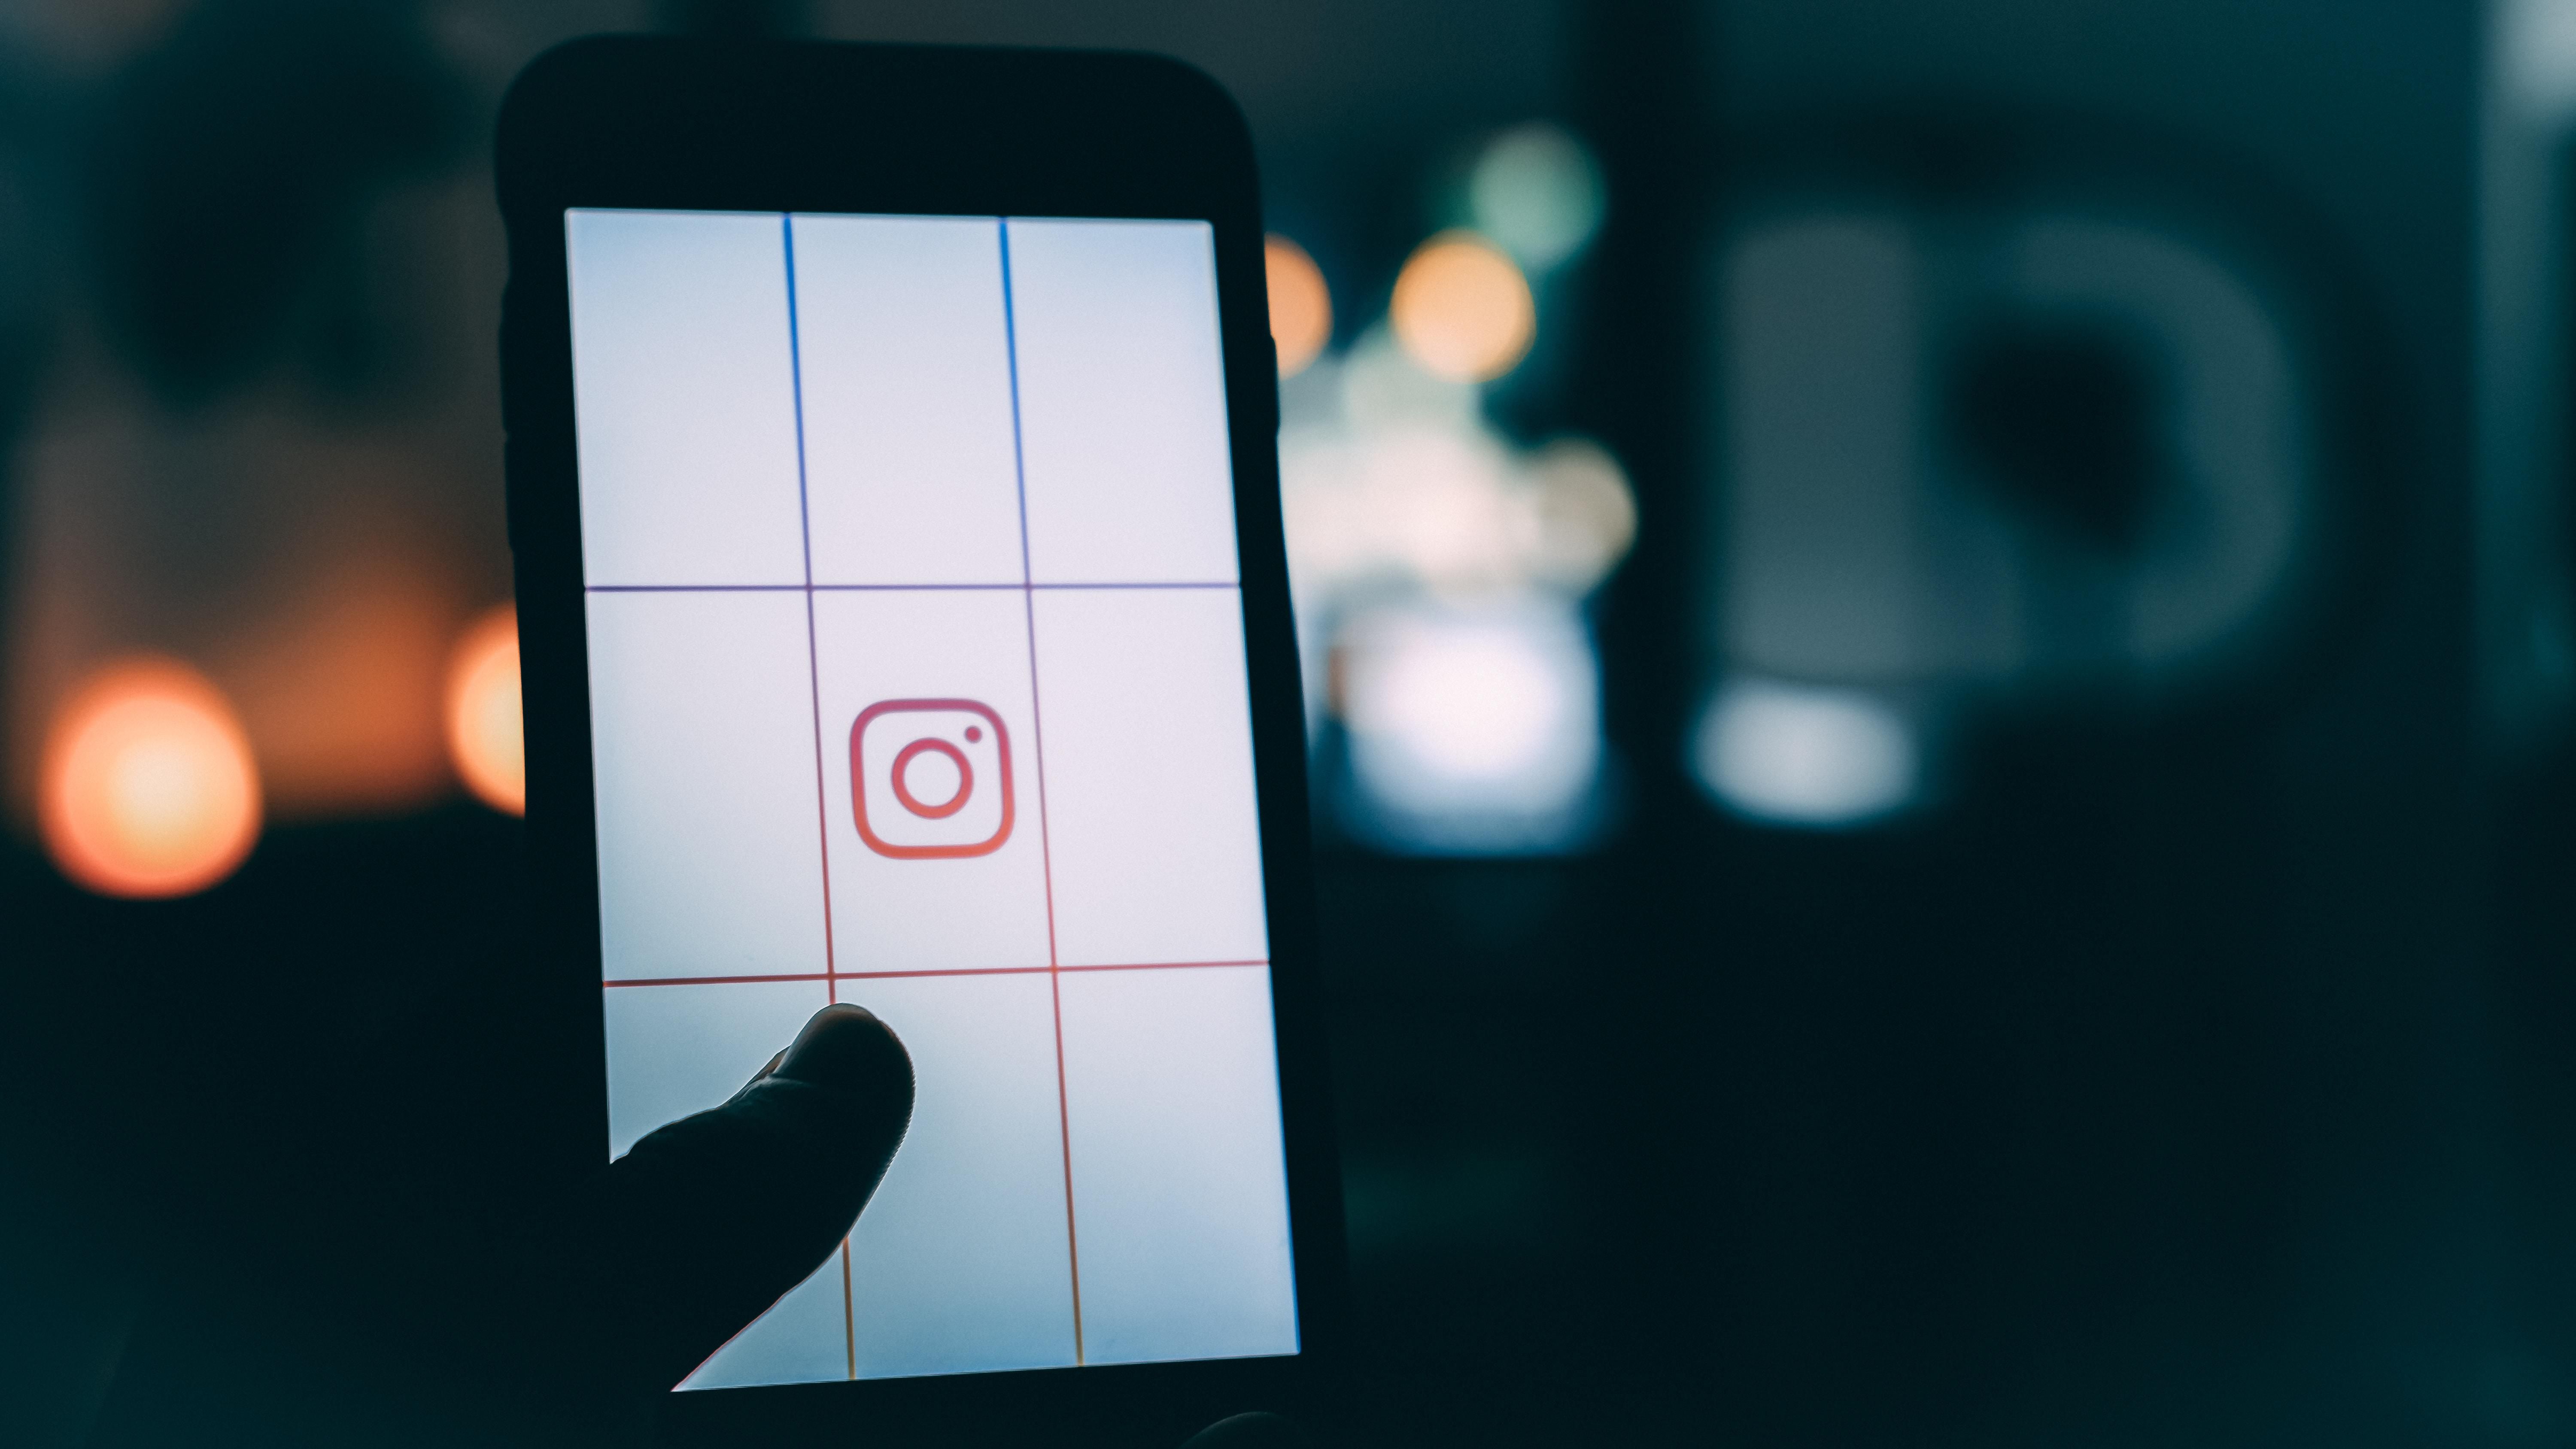 Elképzelhető, hogy az Instagram fogja stabilizálni a piacot